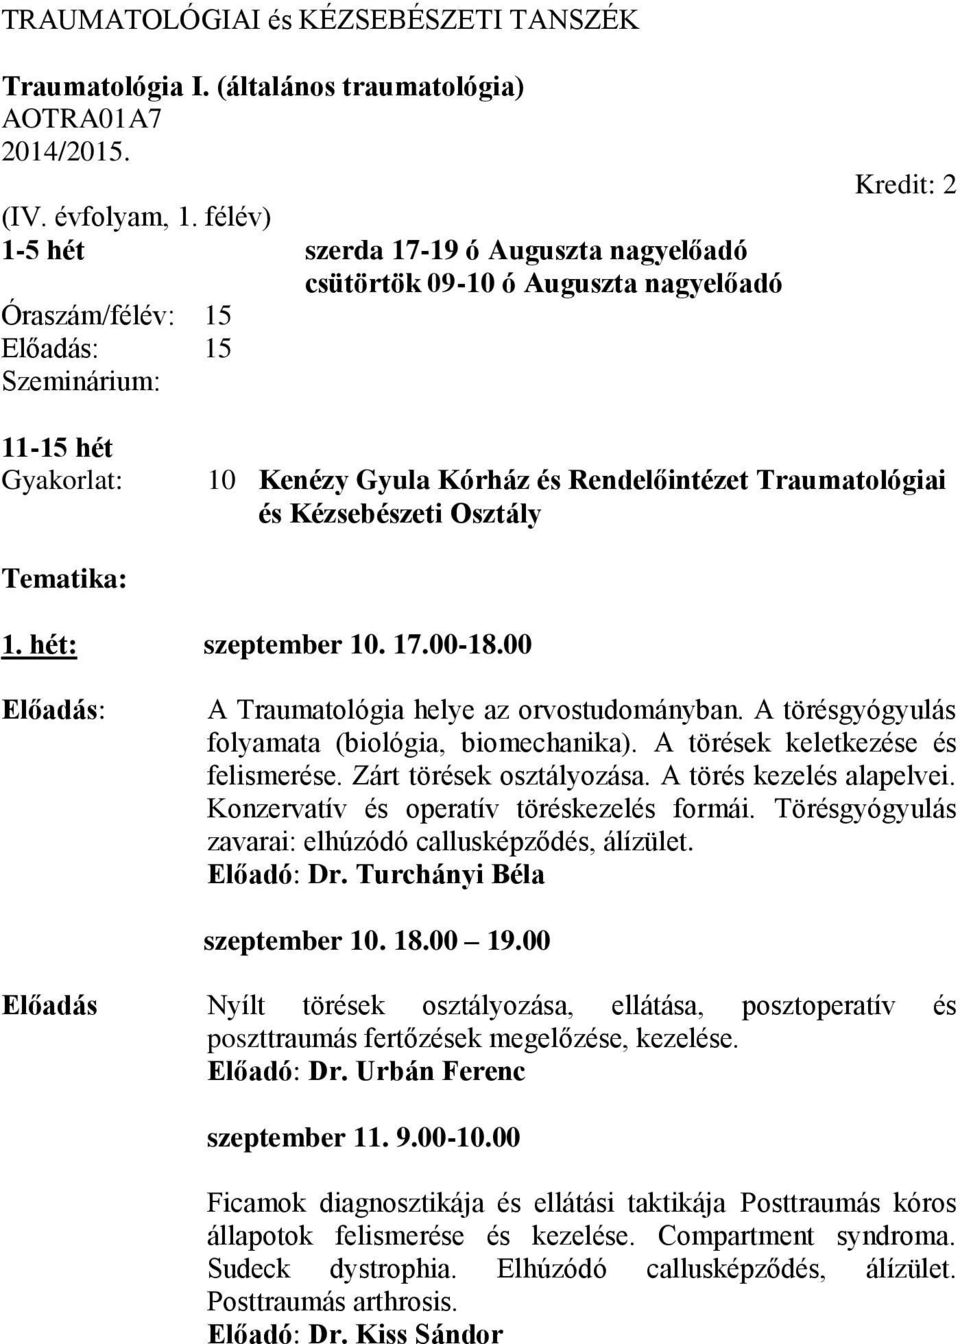 Traumatológiai és Kézsebészeti Osztály Tematika: 1. hét: szeptember 10. 17.00-18.00 : A Traumatológia helye az orvostudományban. A törésgyógyulás folyamata (biológia, biomechanika).